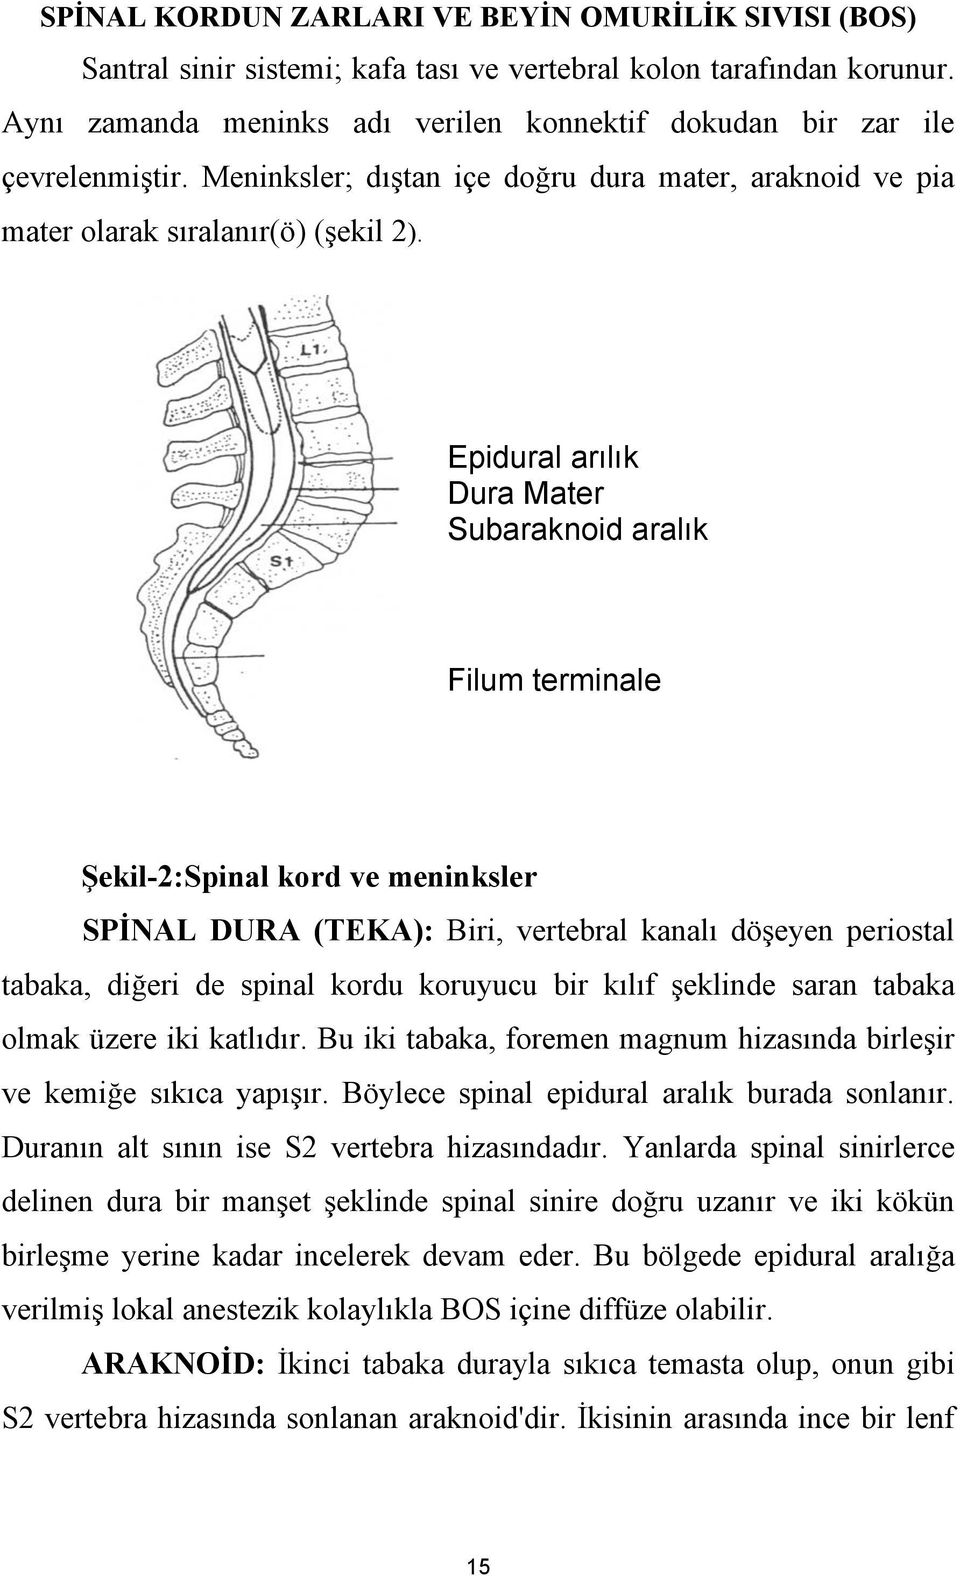 Epidural arılık Dura Mater Subaraknoid aralık Filum terminale Şekil-2:Spinal kord ve meninksler SPİNAL DURA (TEKA): Biri, vertebral kanalı döşeyen periostal tabaka, diğeri de spinal kordu koruyucu